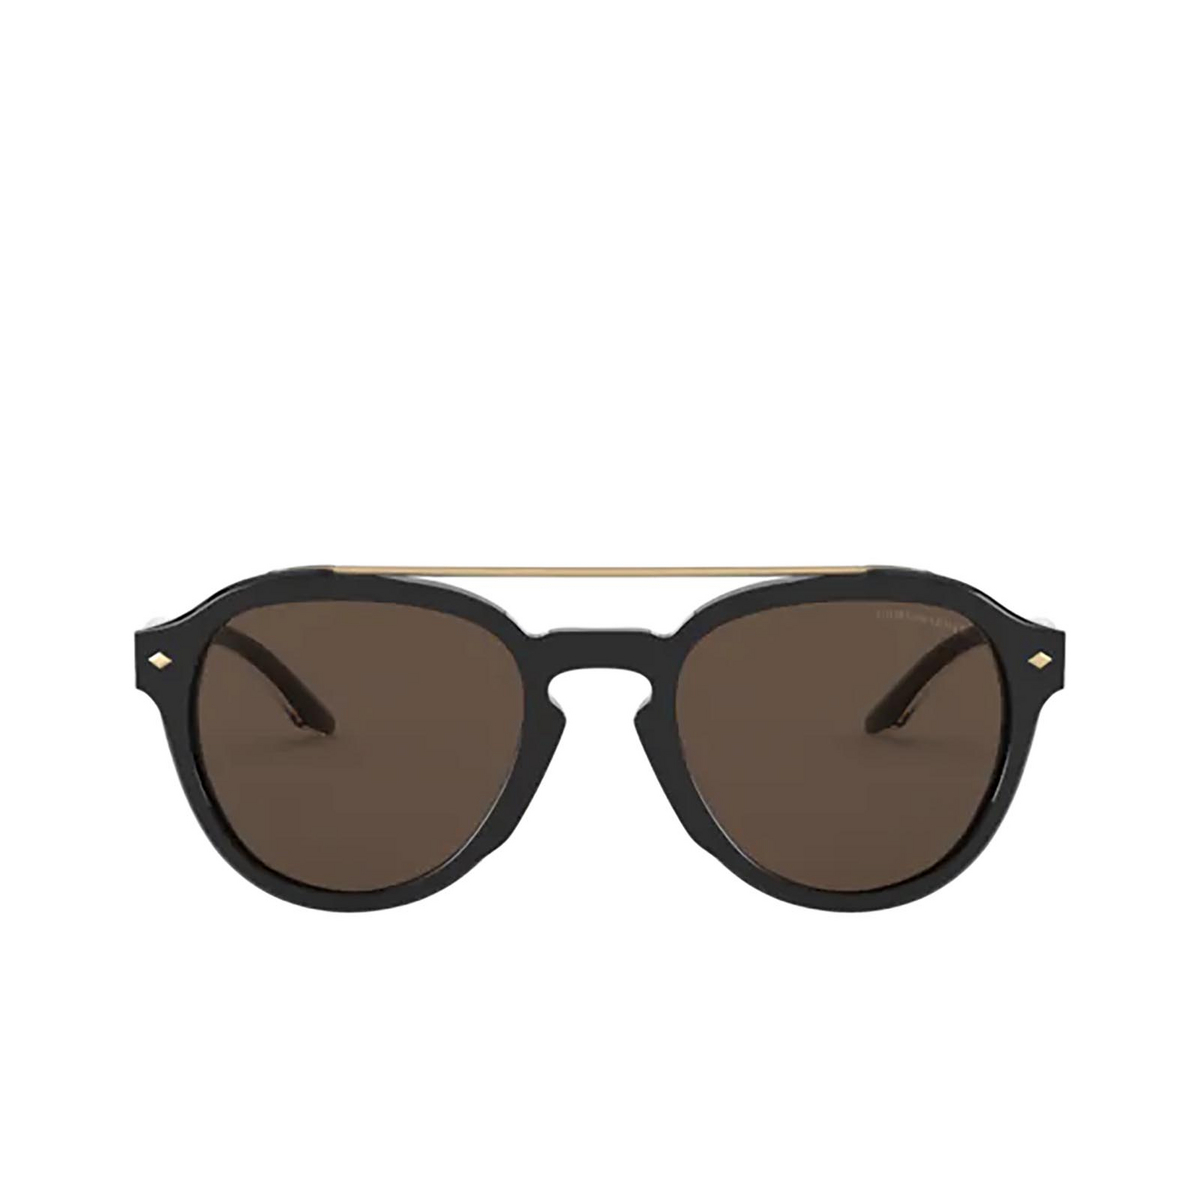 Giorgio Armani® Square Sunglasses: AR8129 color Black 500173 - front view.